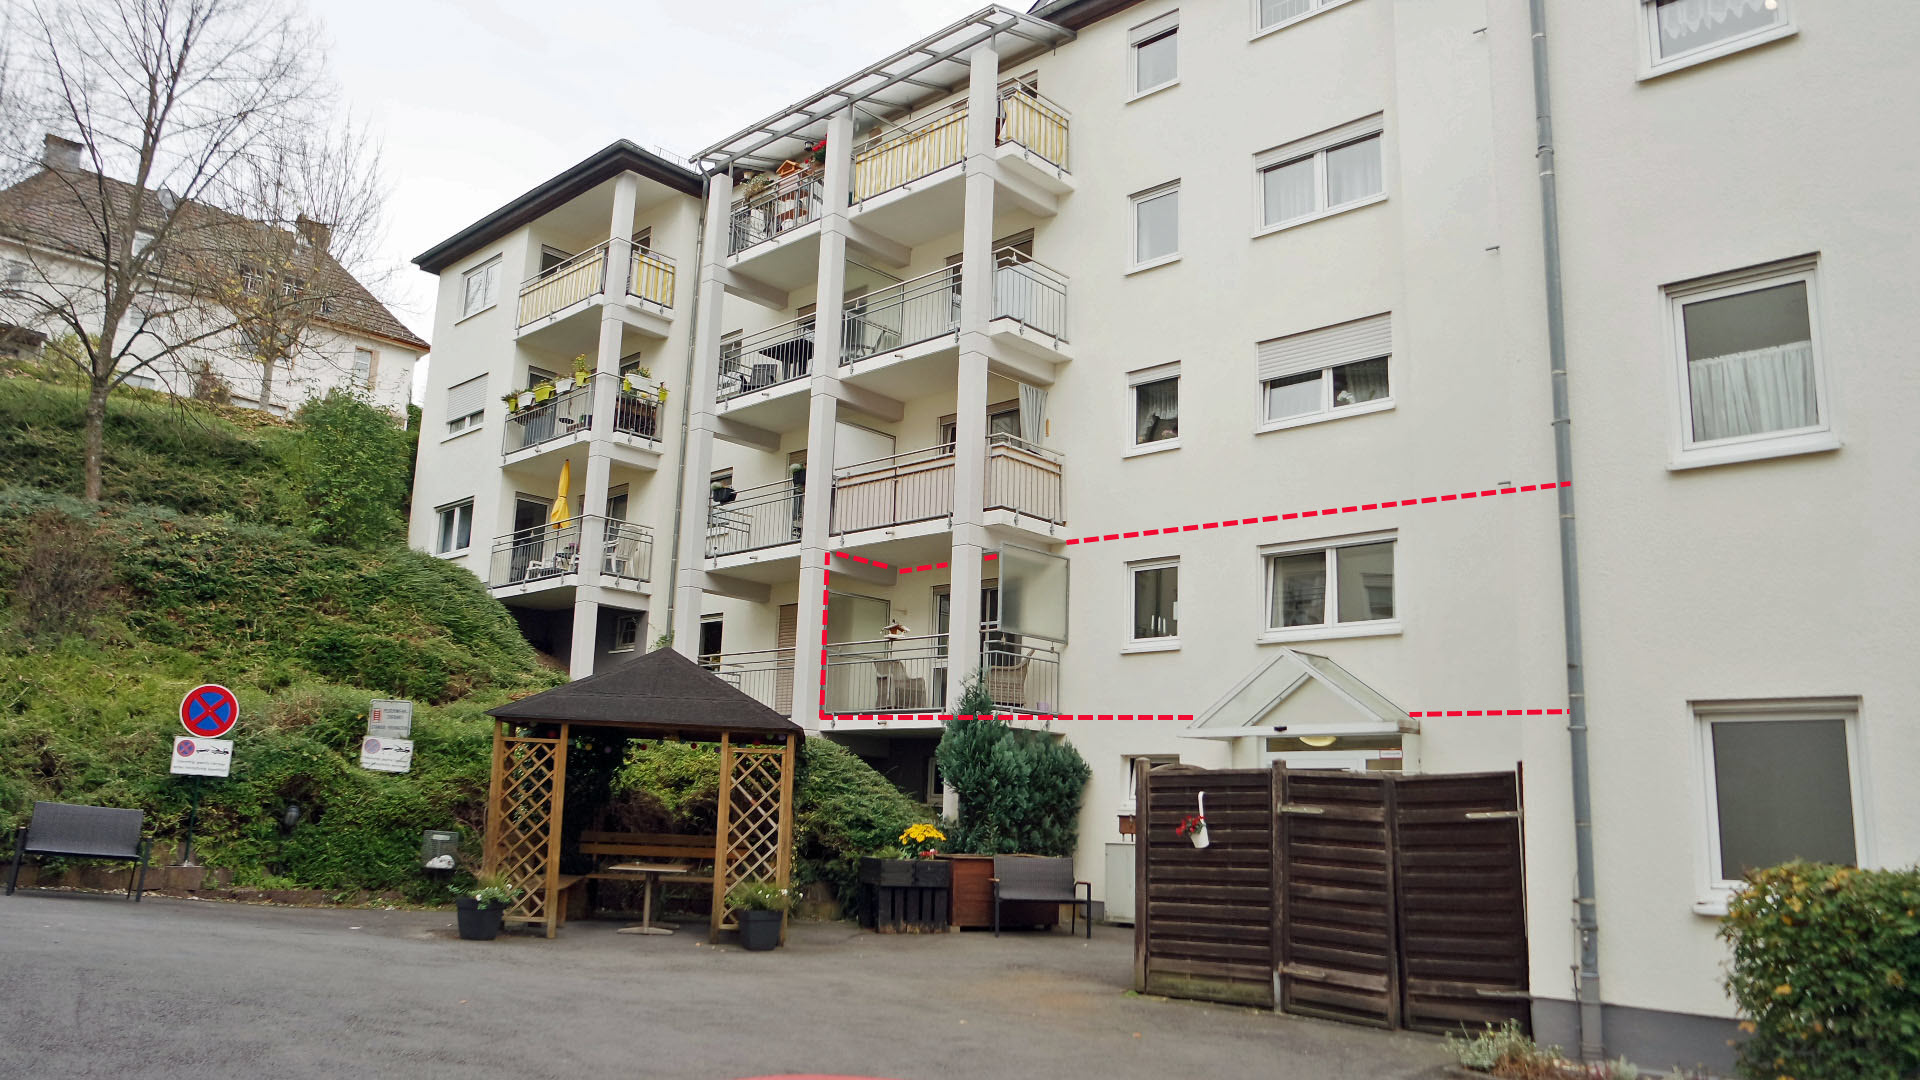 256 2-288 - Gummersbach: Appartement in einer Seniorenresidenz